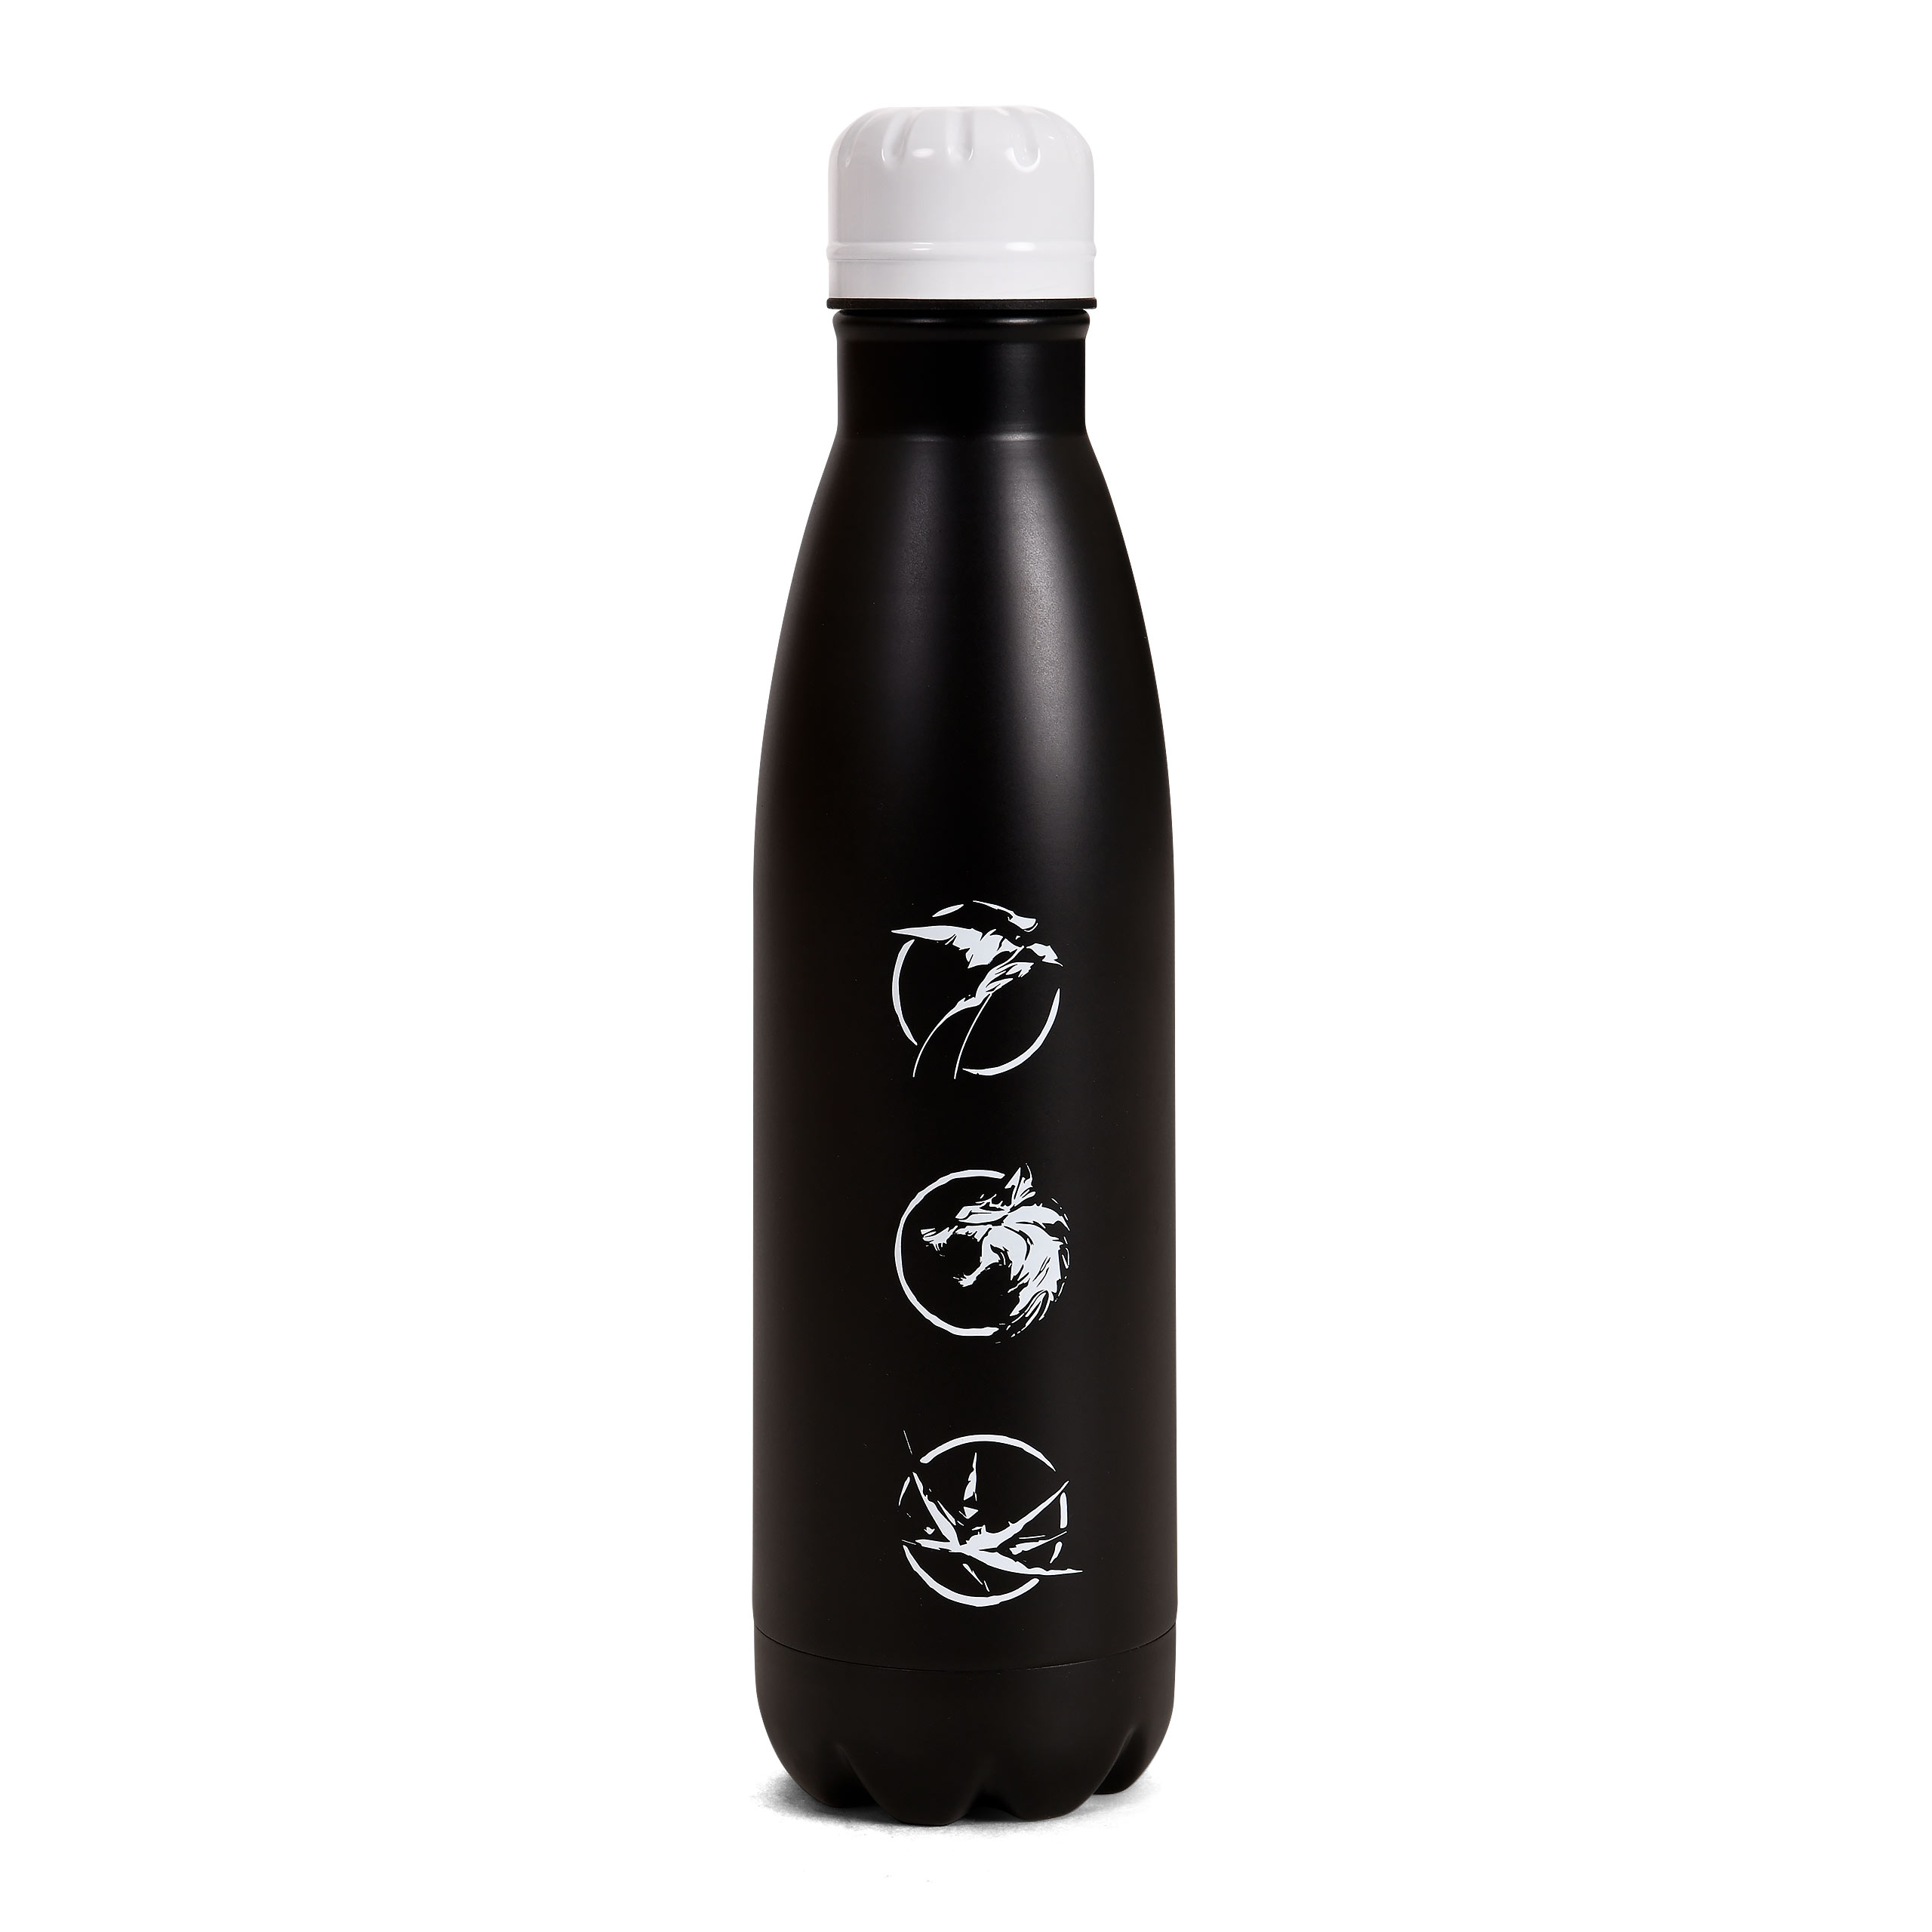 Witcher - Wolf Medallion Water Bottle